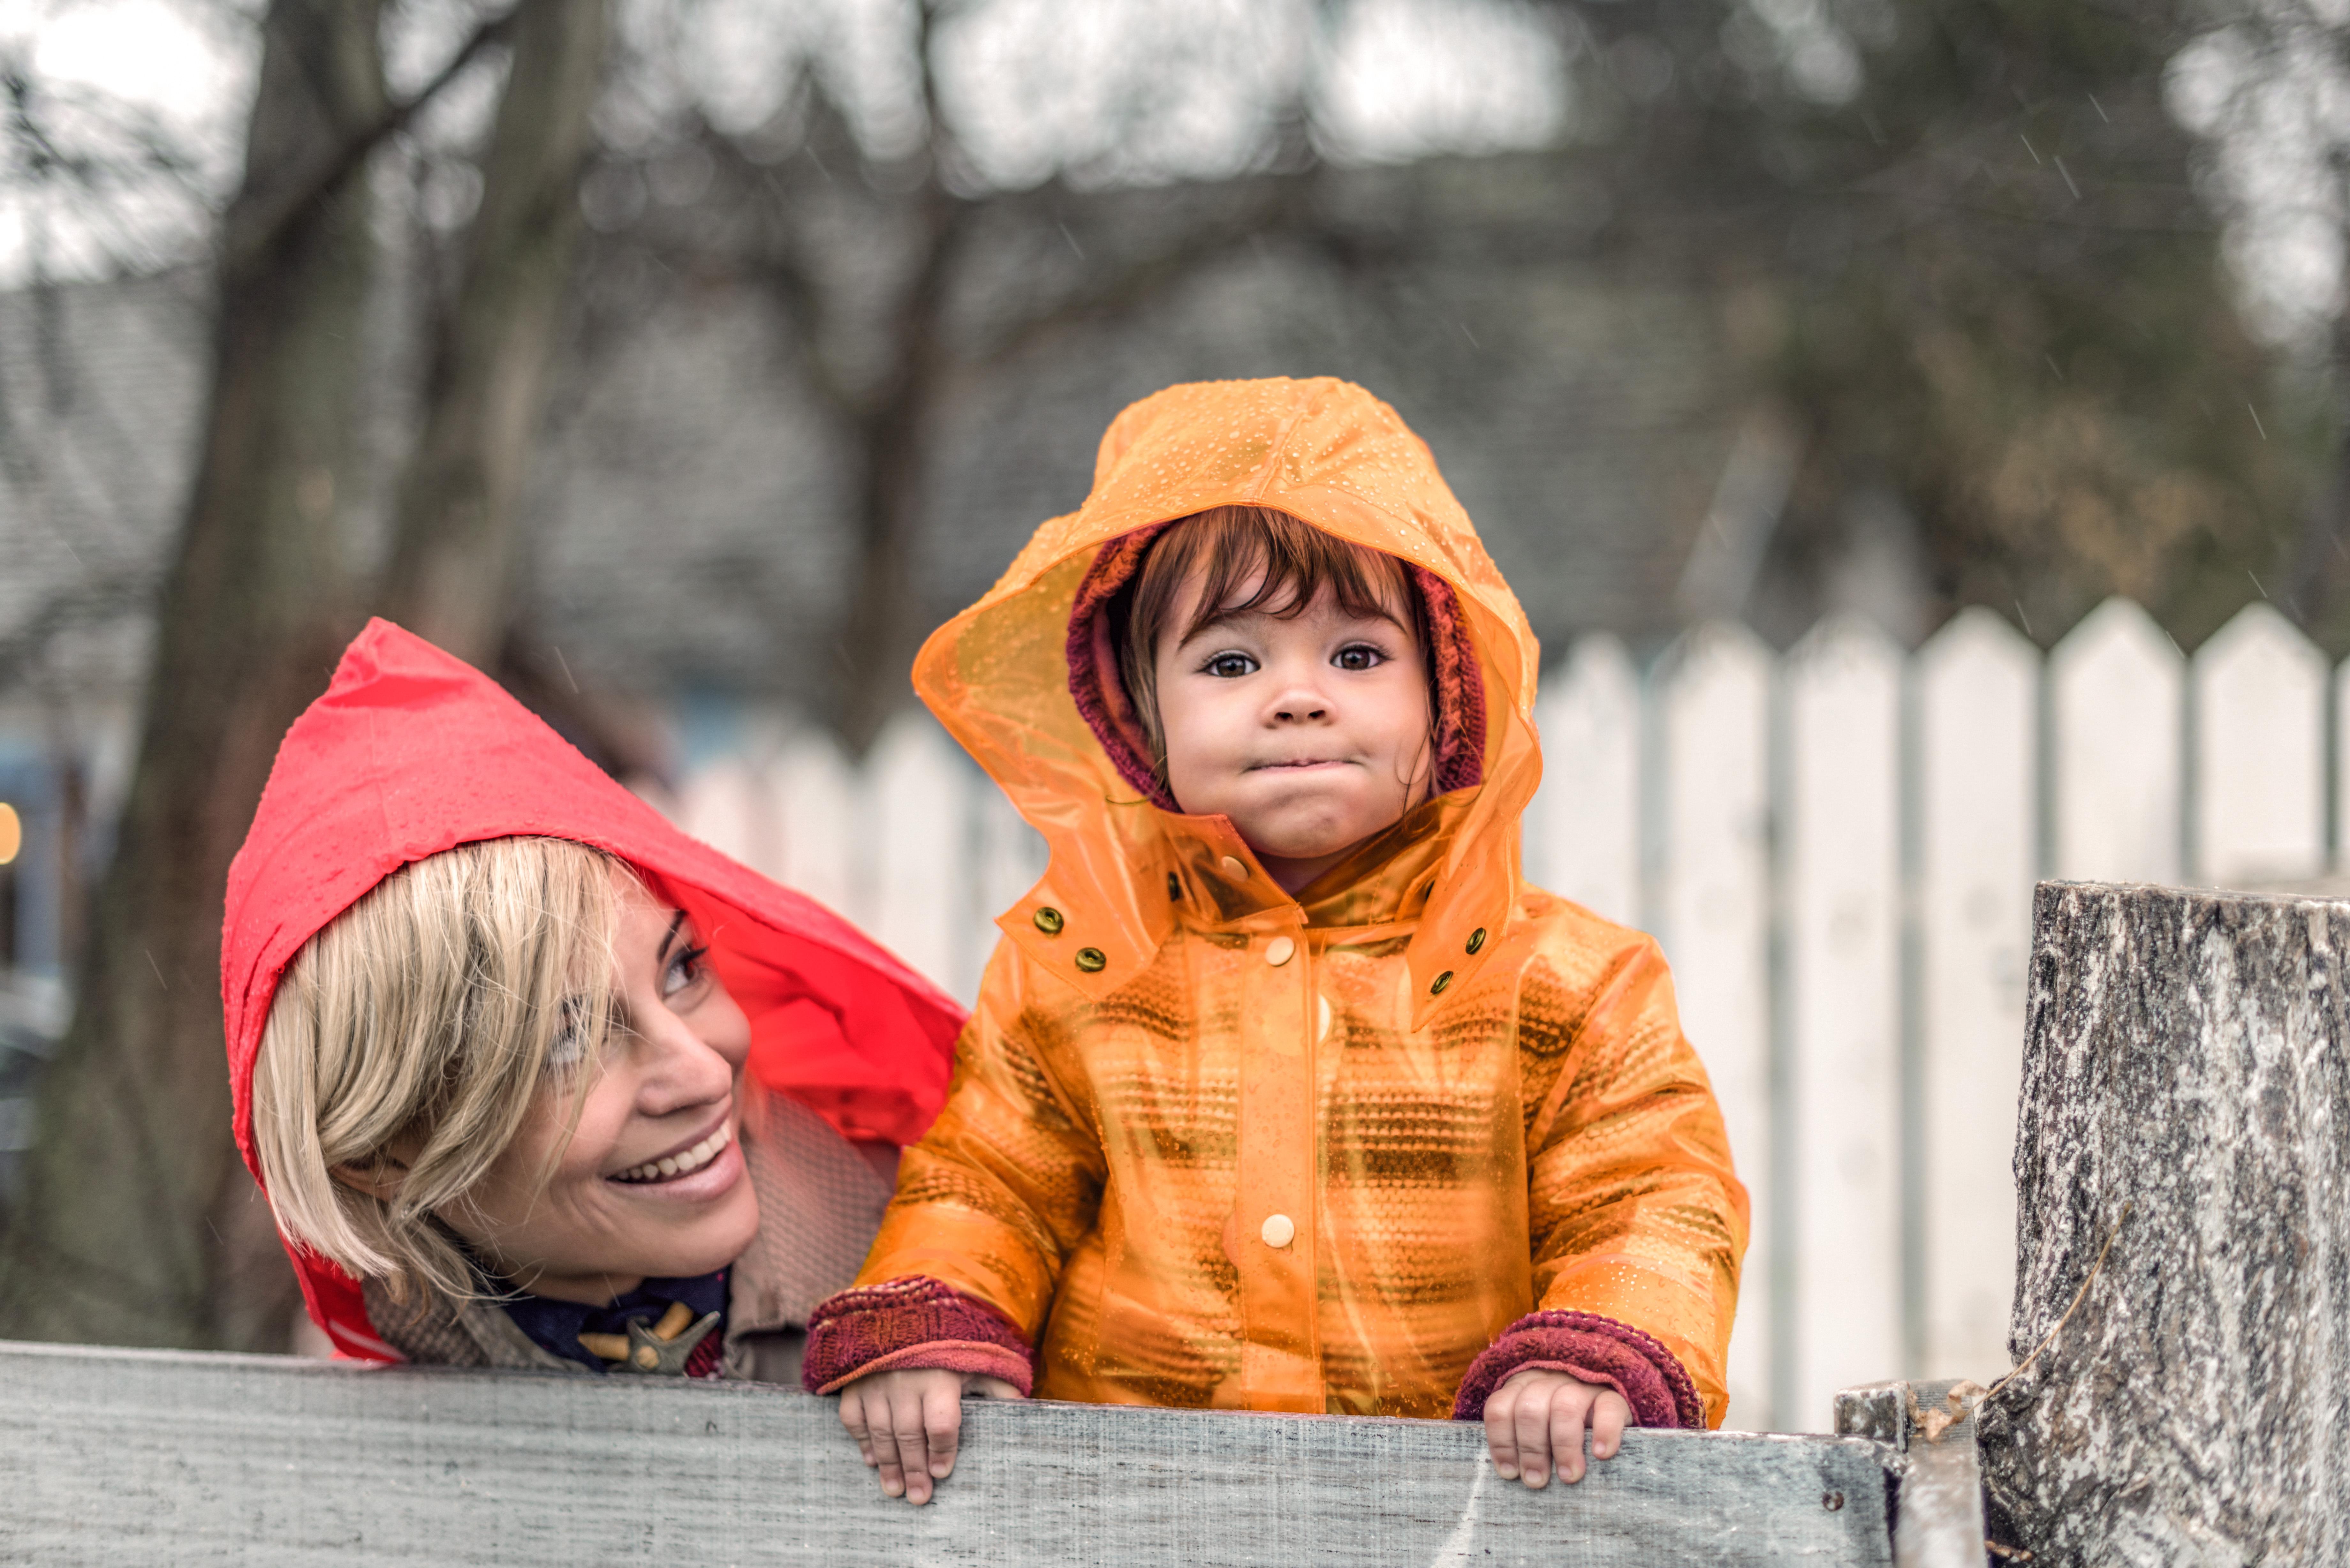  Mutter und Kind lachen und tragen Regenjacken